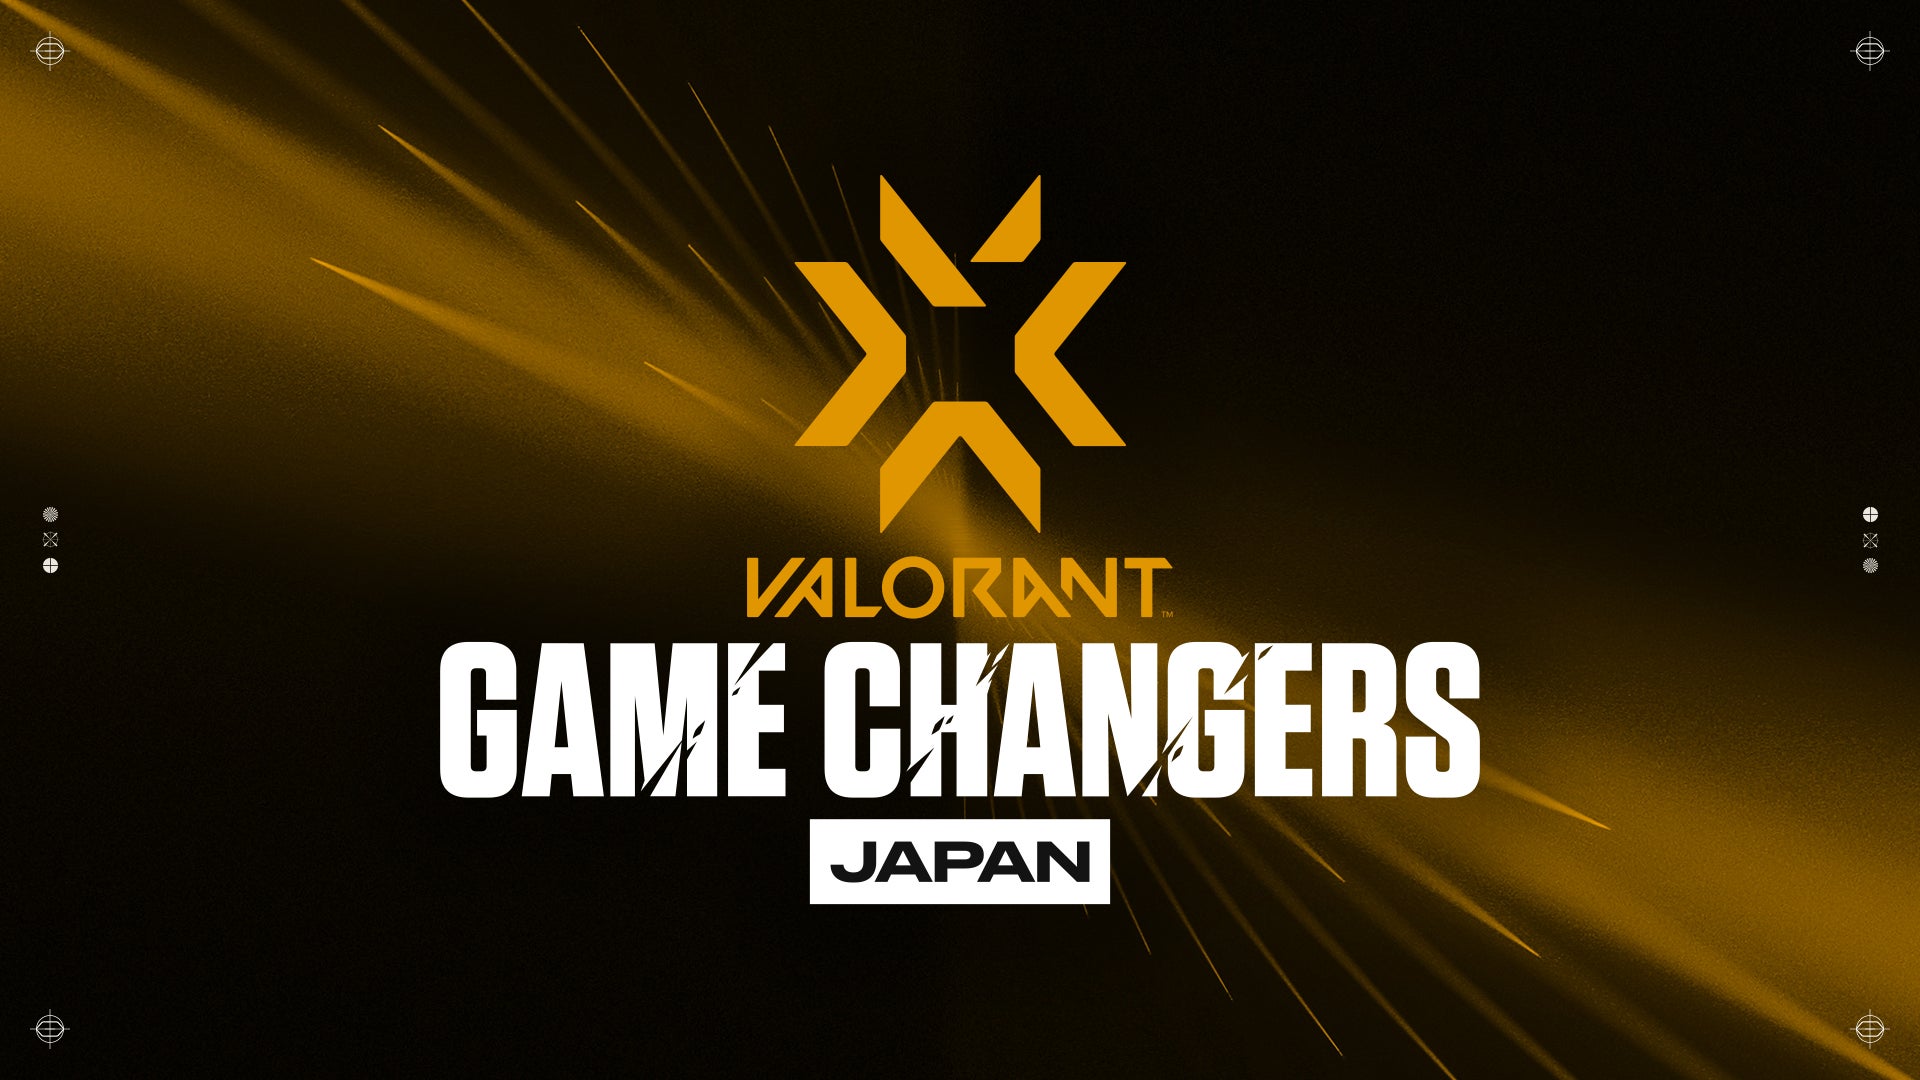 世界一の『VALORANT』女性チームを決定する公式大会「VALORANT GAME CHANGERS」